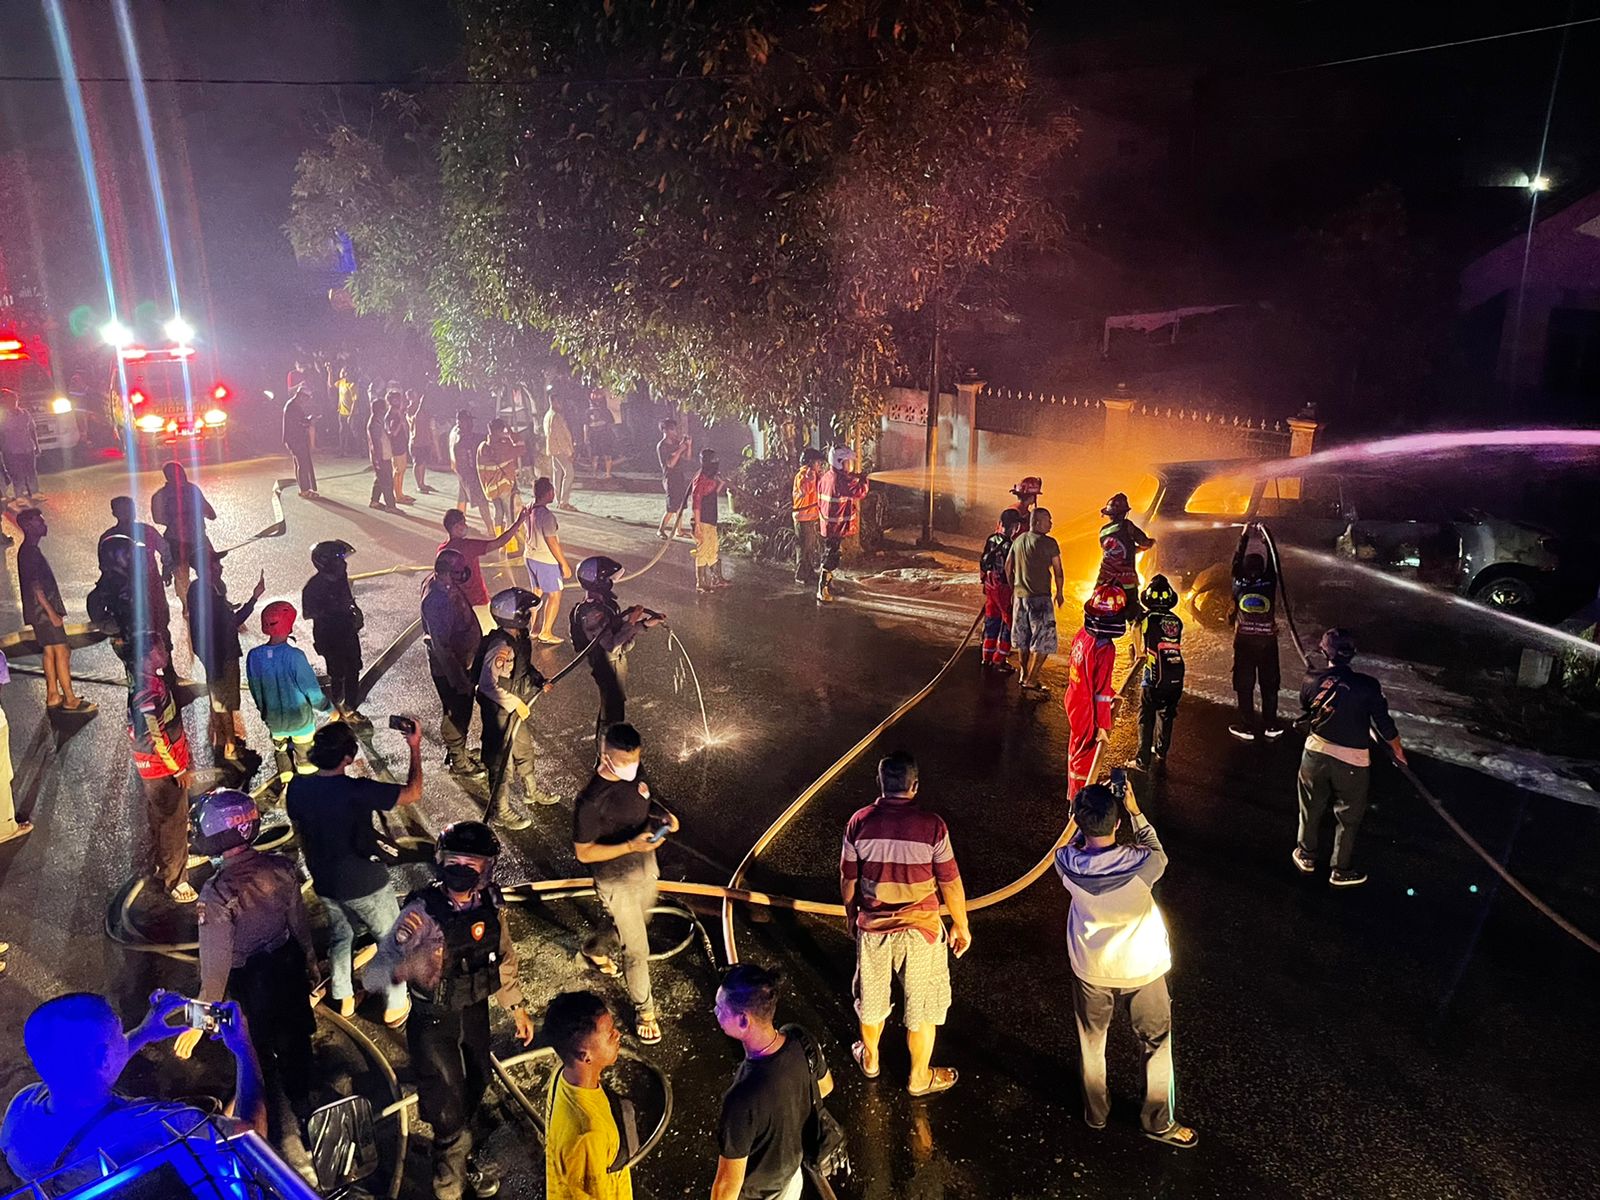 Mobil yang Terbakar di Jalan Rajawali Diduga Melangsir BBM, Sopir Menghilang Usai Teriak Minta Tolong